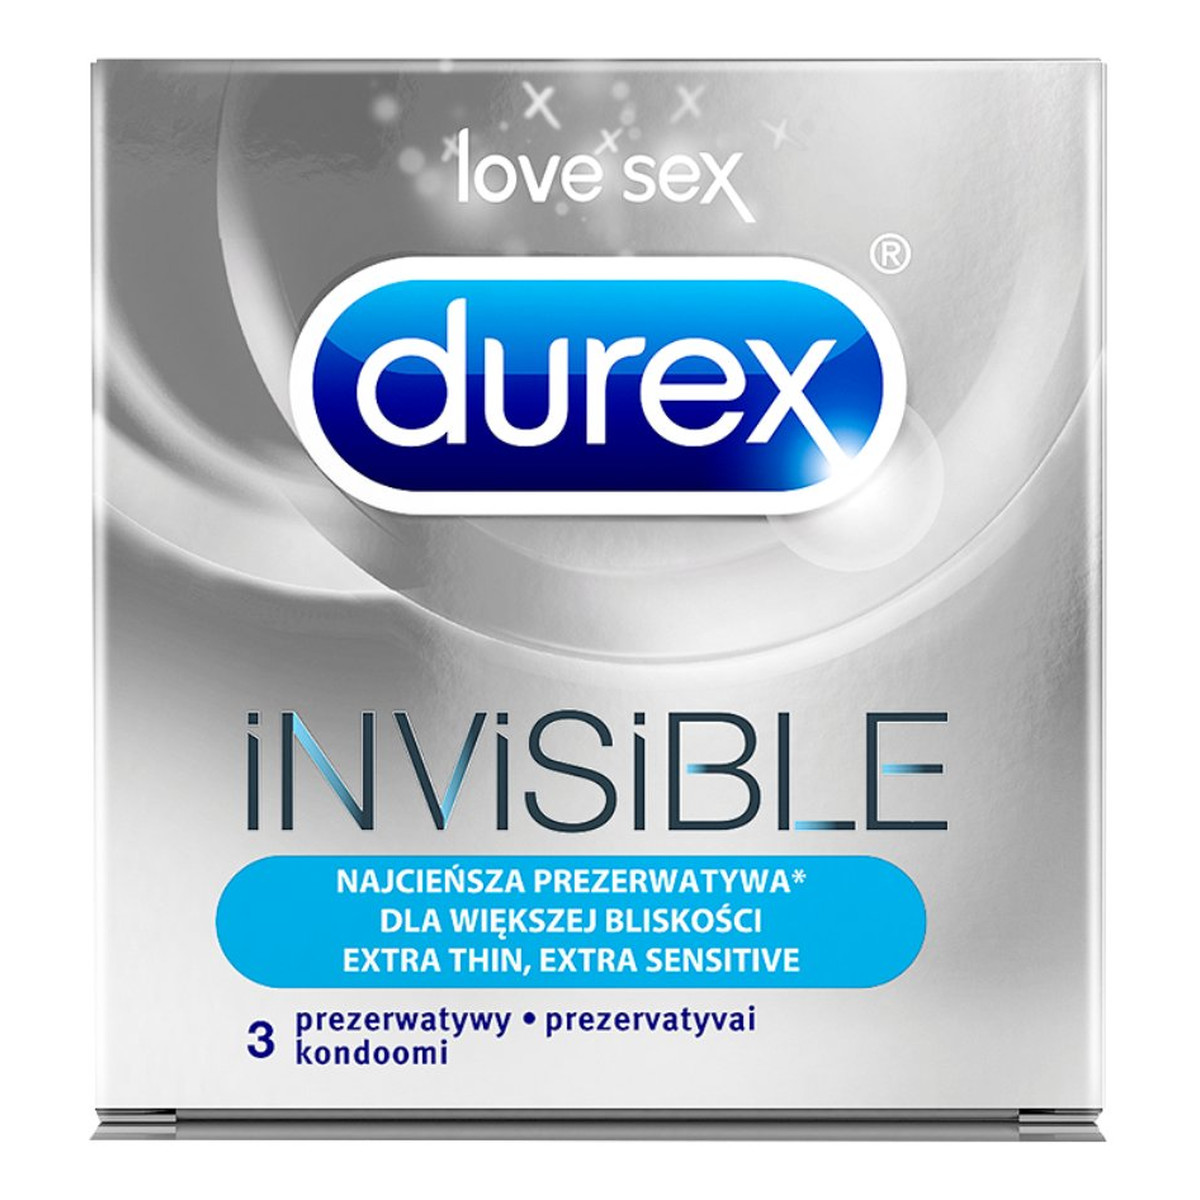 Durex Prezerwatywy Durex dla większej bliskości 3 szt